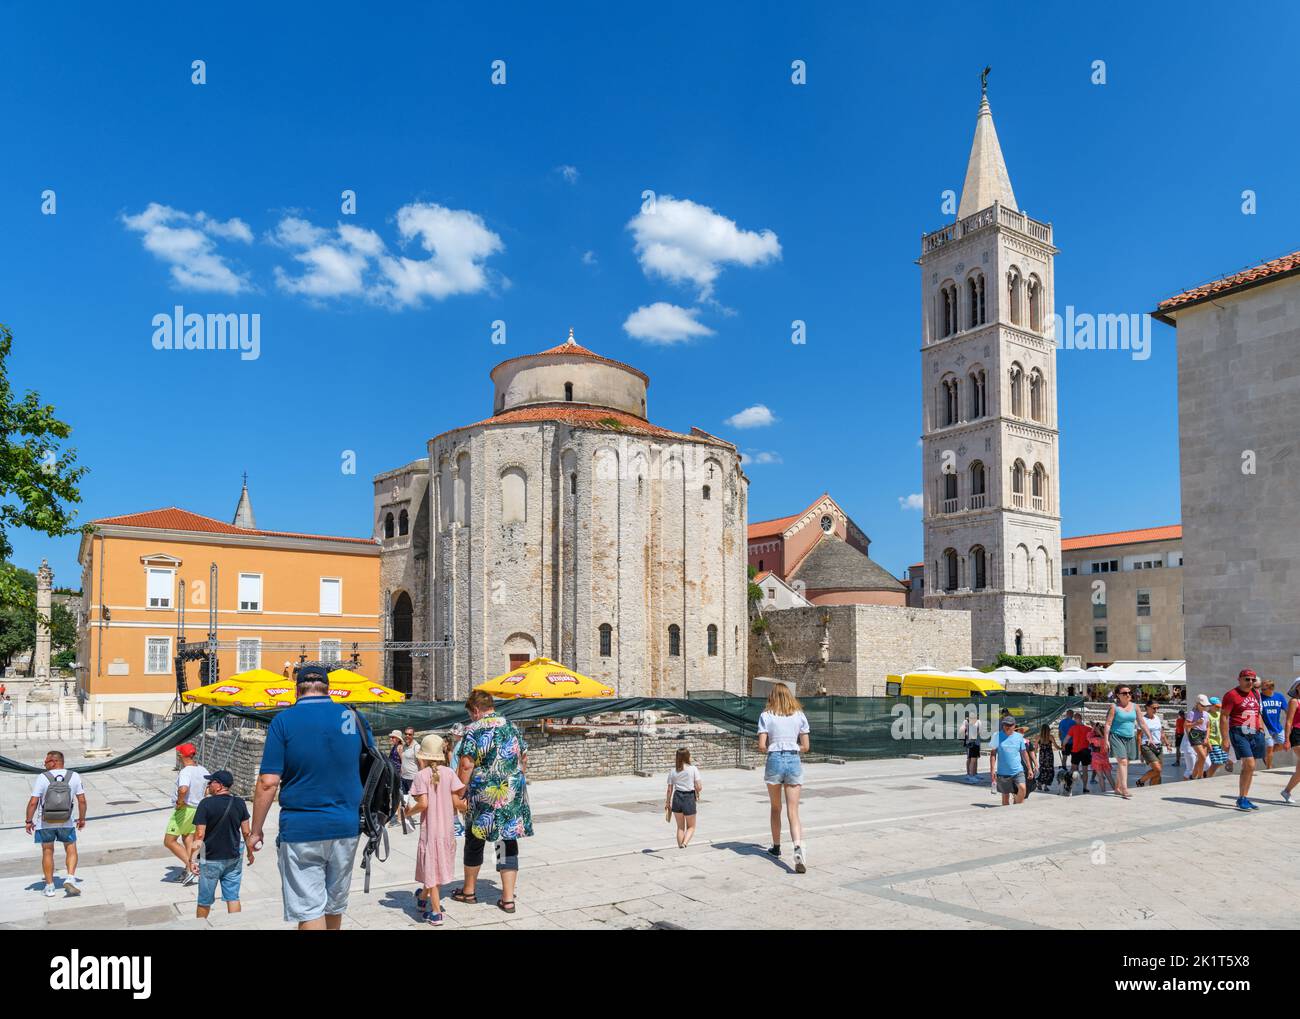 Das Forum Romanum, die Kathedrale St. Anastasia und die Kirche St. Donatus im historischen Zentrum von Zadar, Kroatien Stockfoto